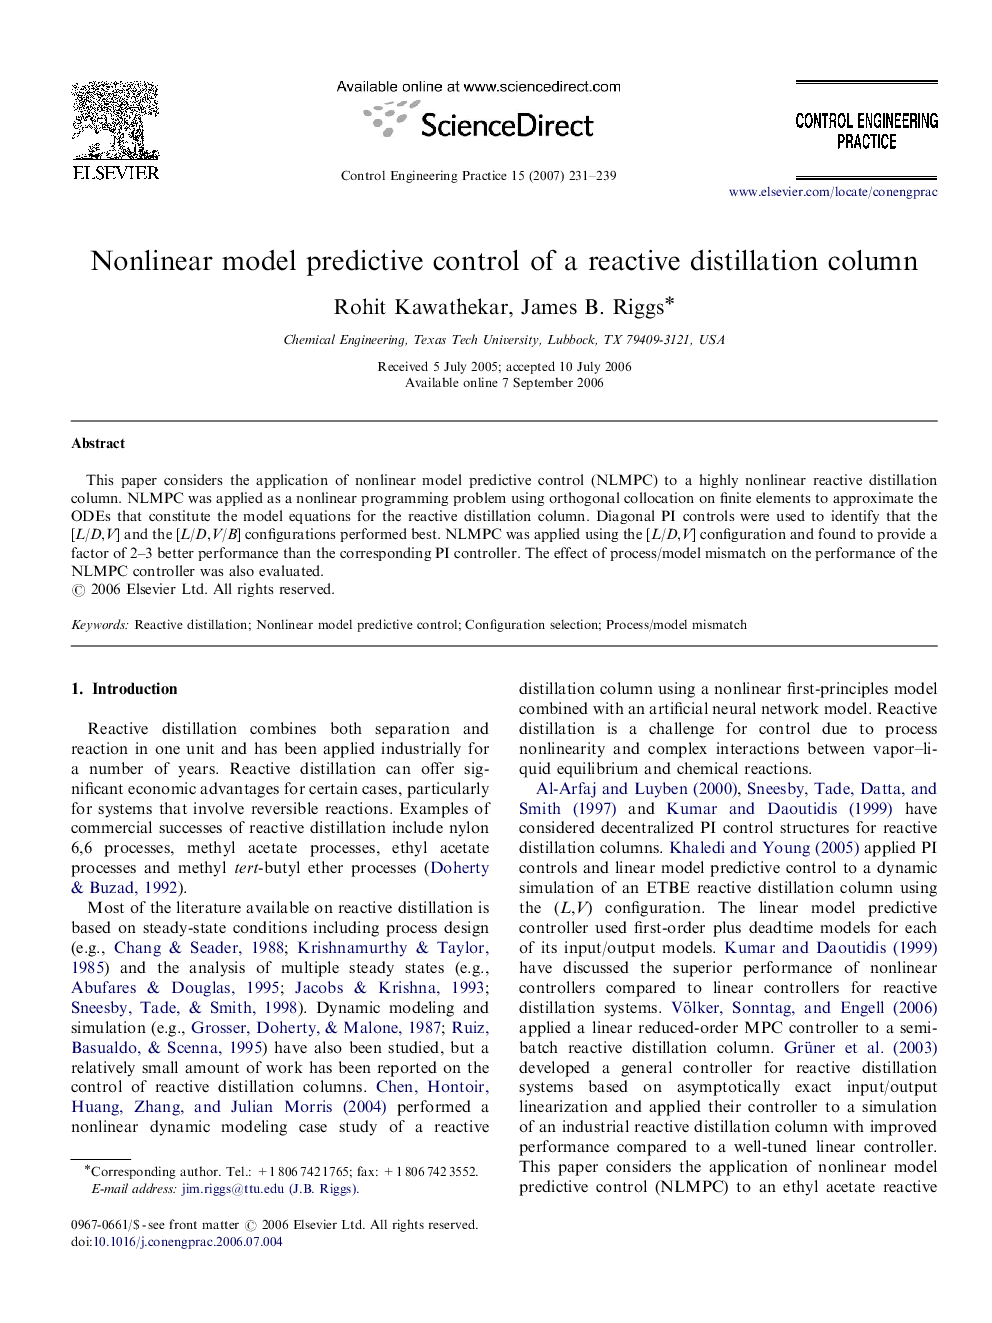 Nonlinear model predictive control of a reactive distillation column